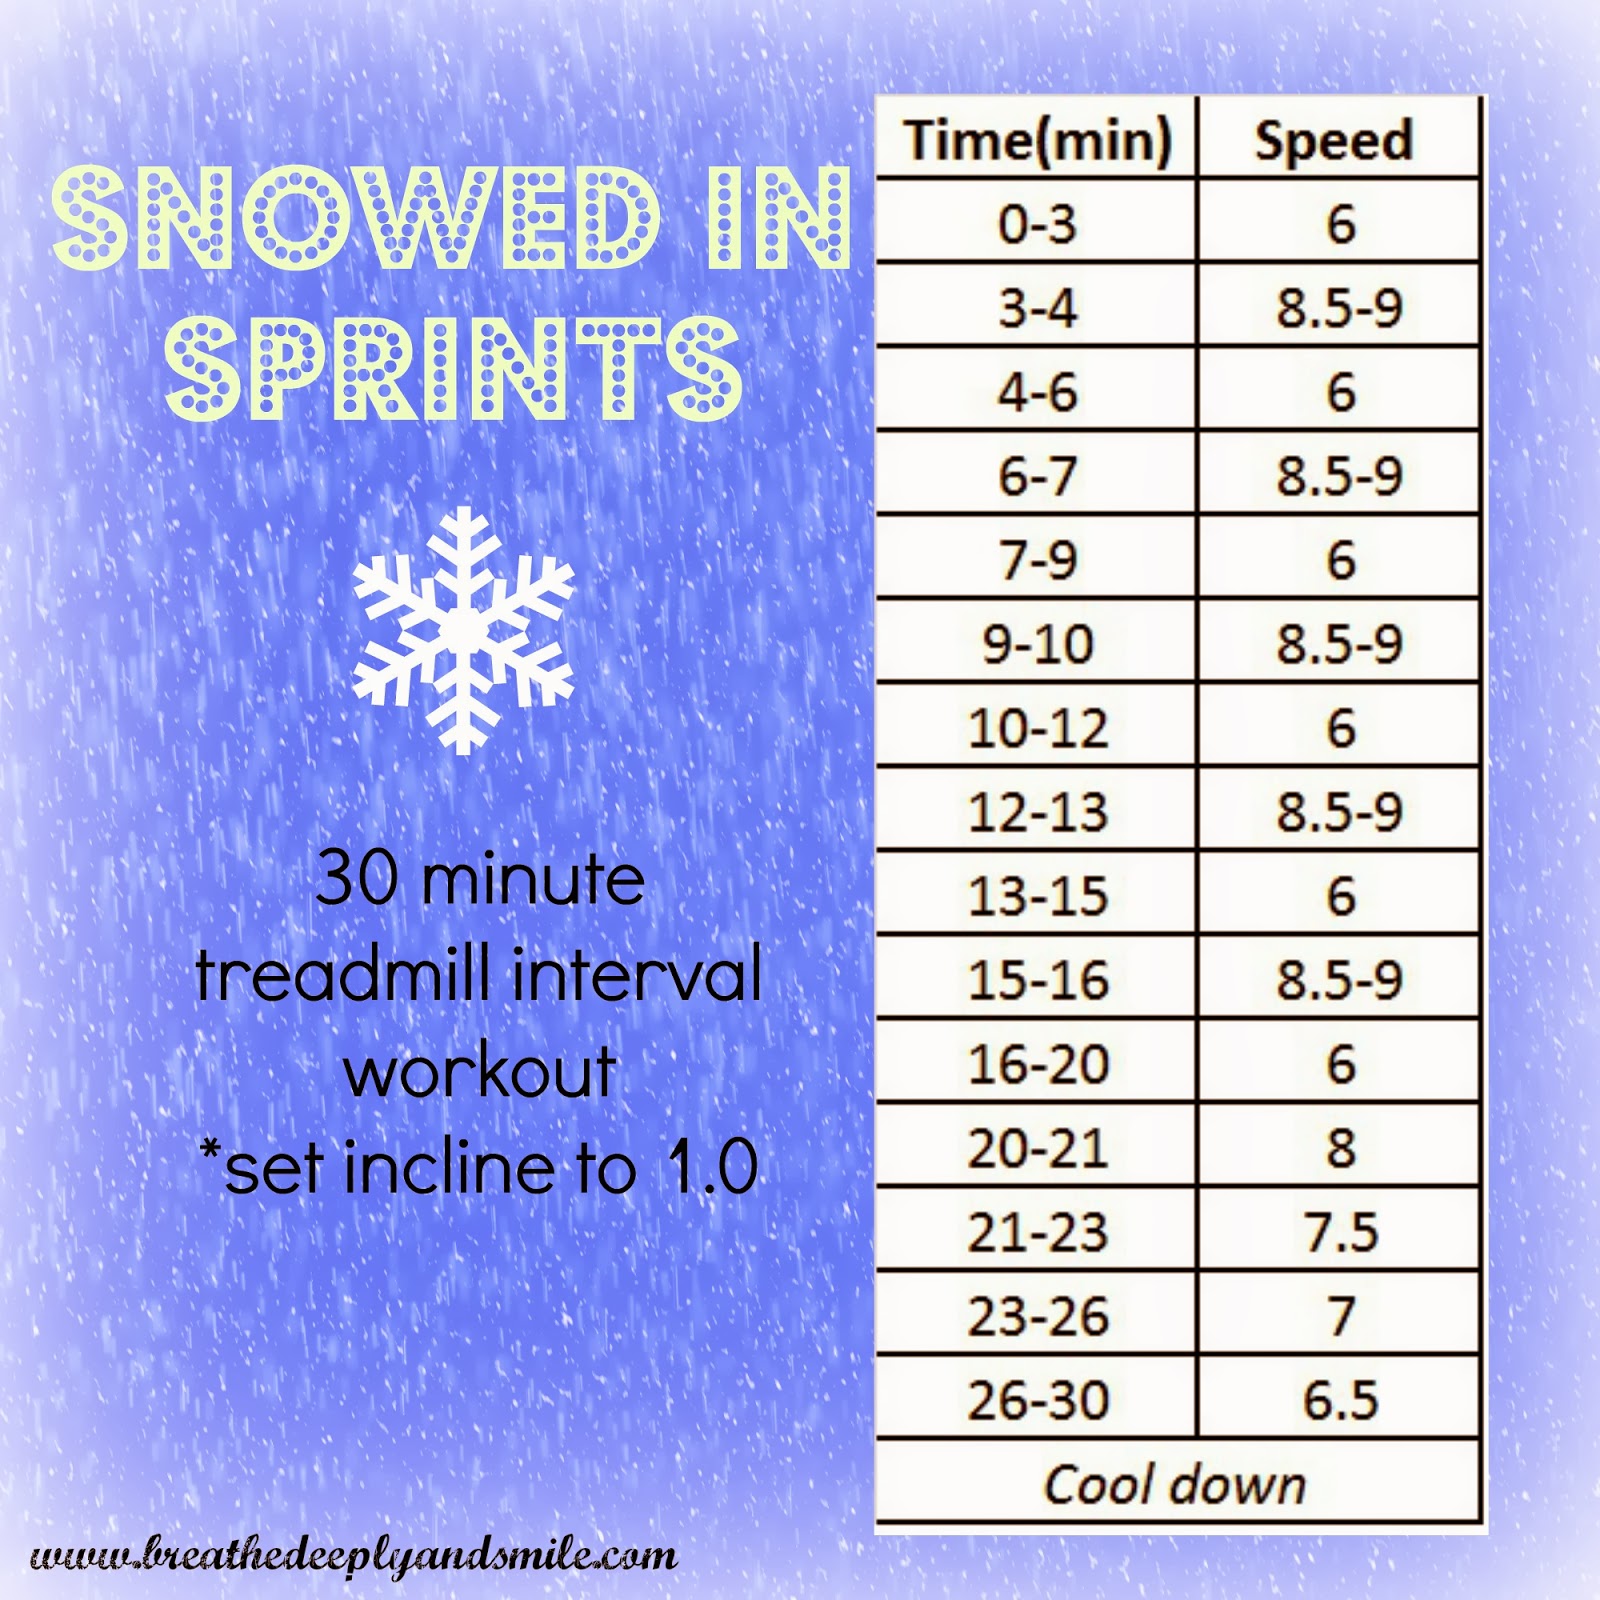 Snowed-in-treadmill-Sprints